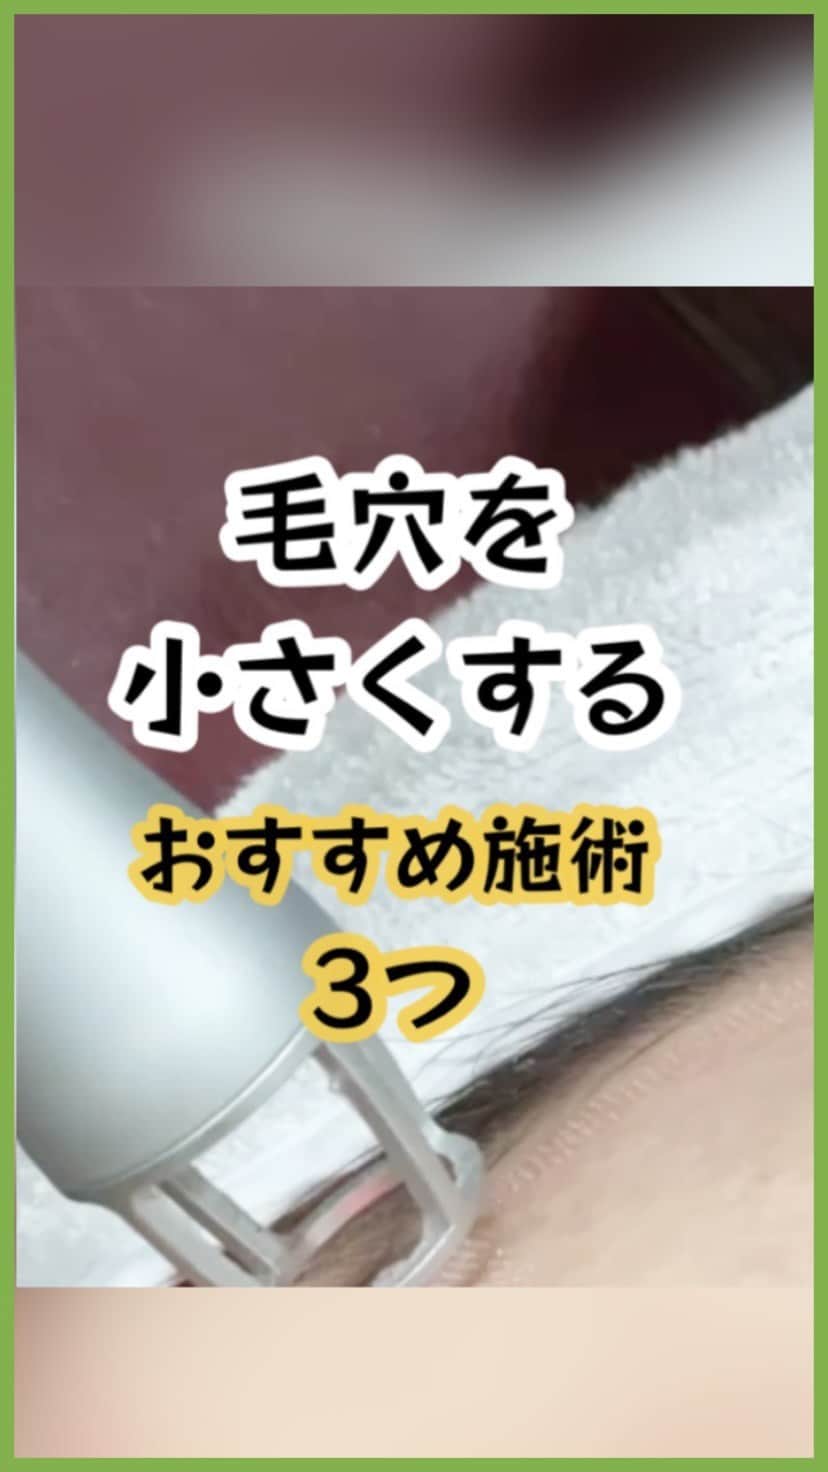 オラクル美容皮膚科東京新宿院のインスタグラム